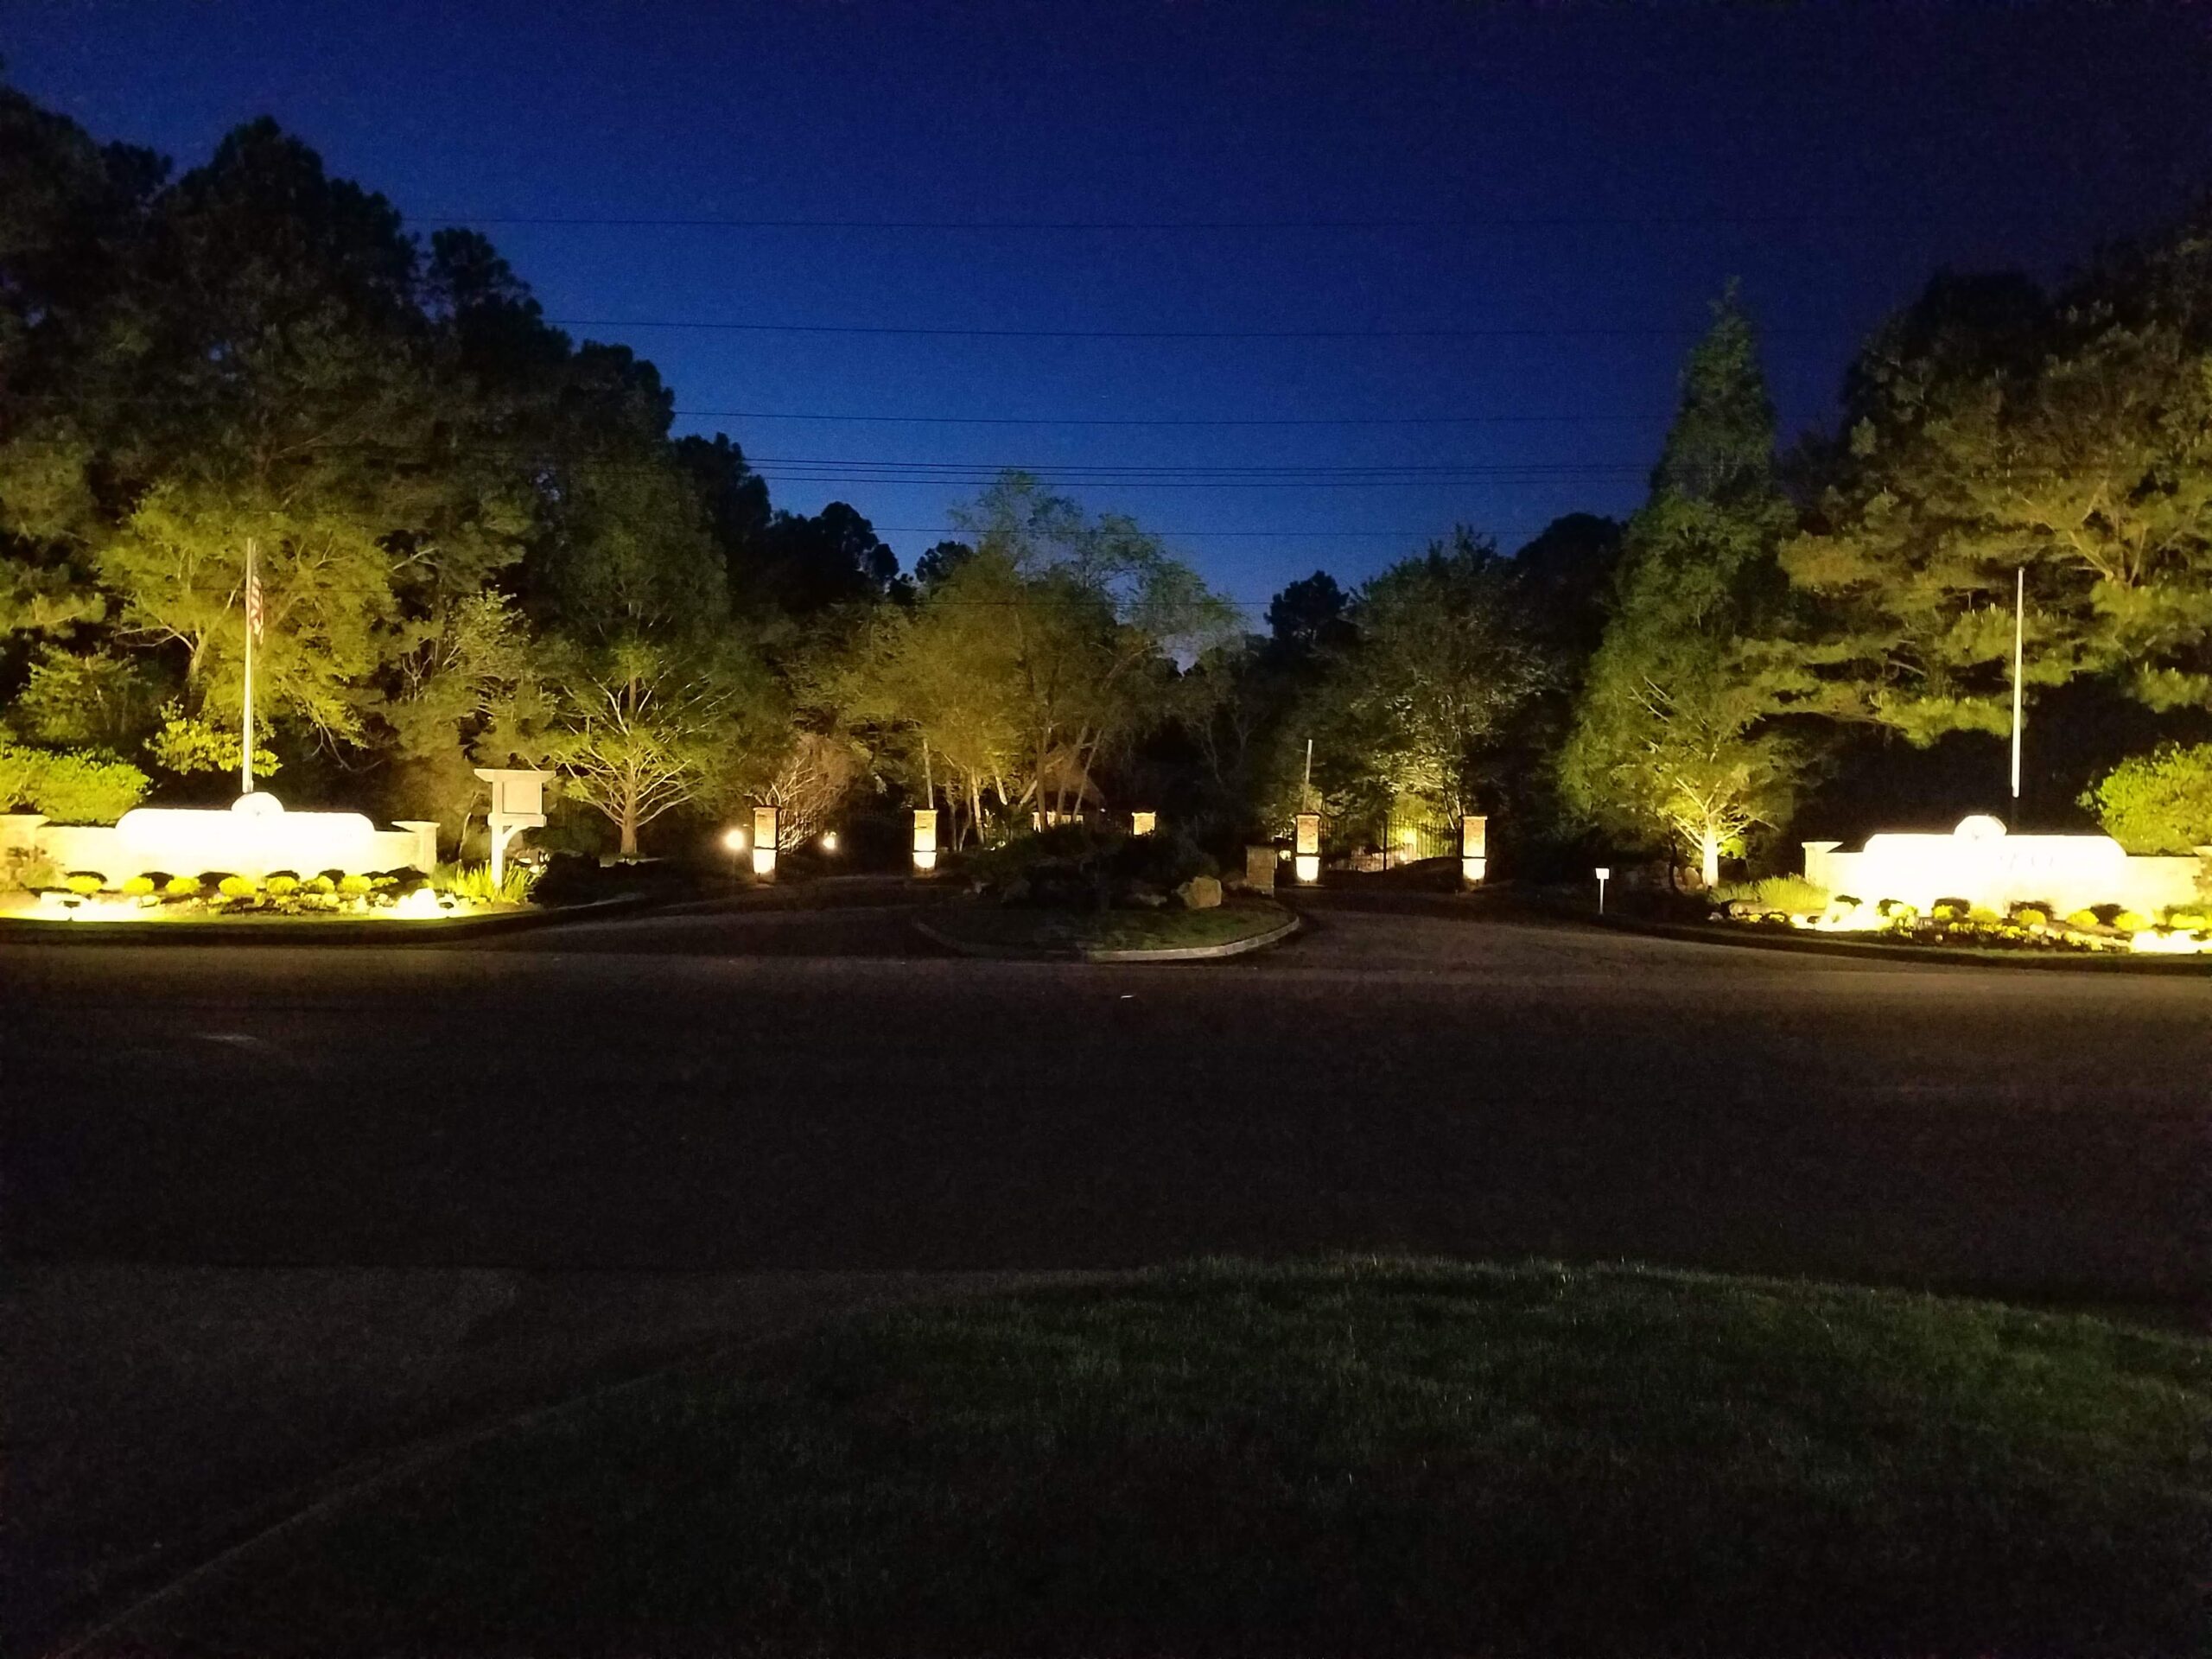 tree lighting